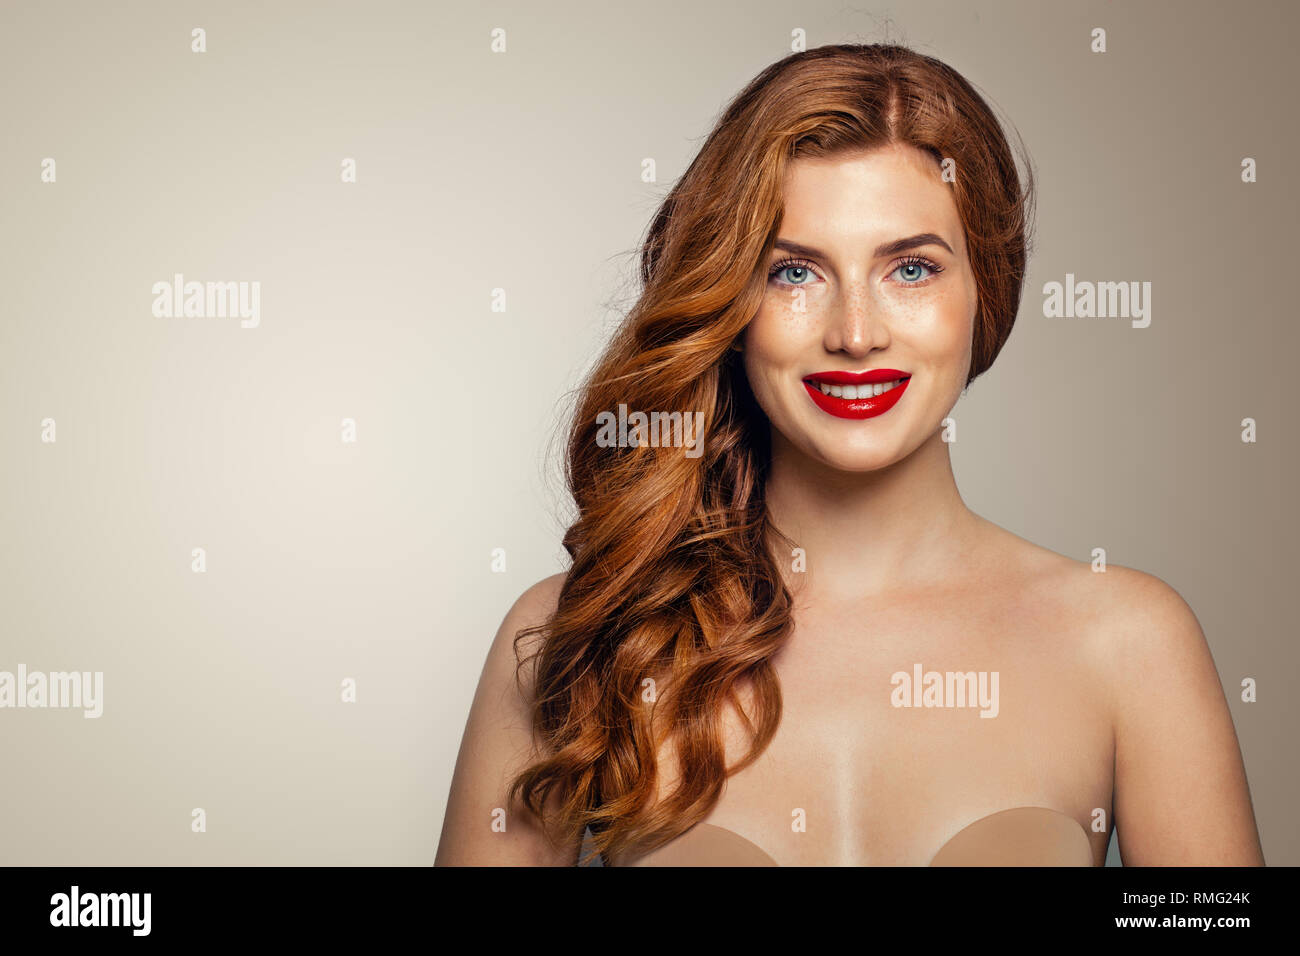 Portrait de femme rousse heureux. Tête rouge élégante fille avec curly hairstyle smiling Banque D'Images